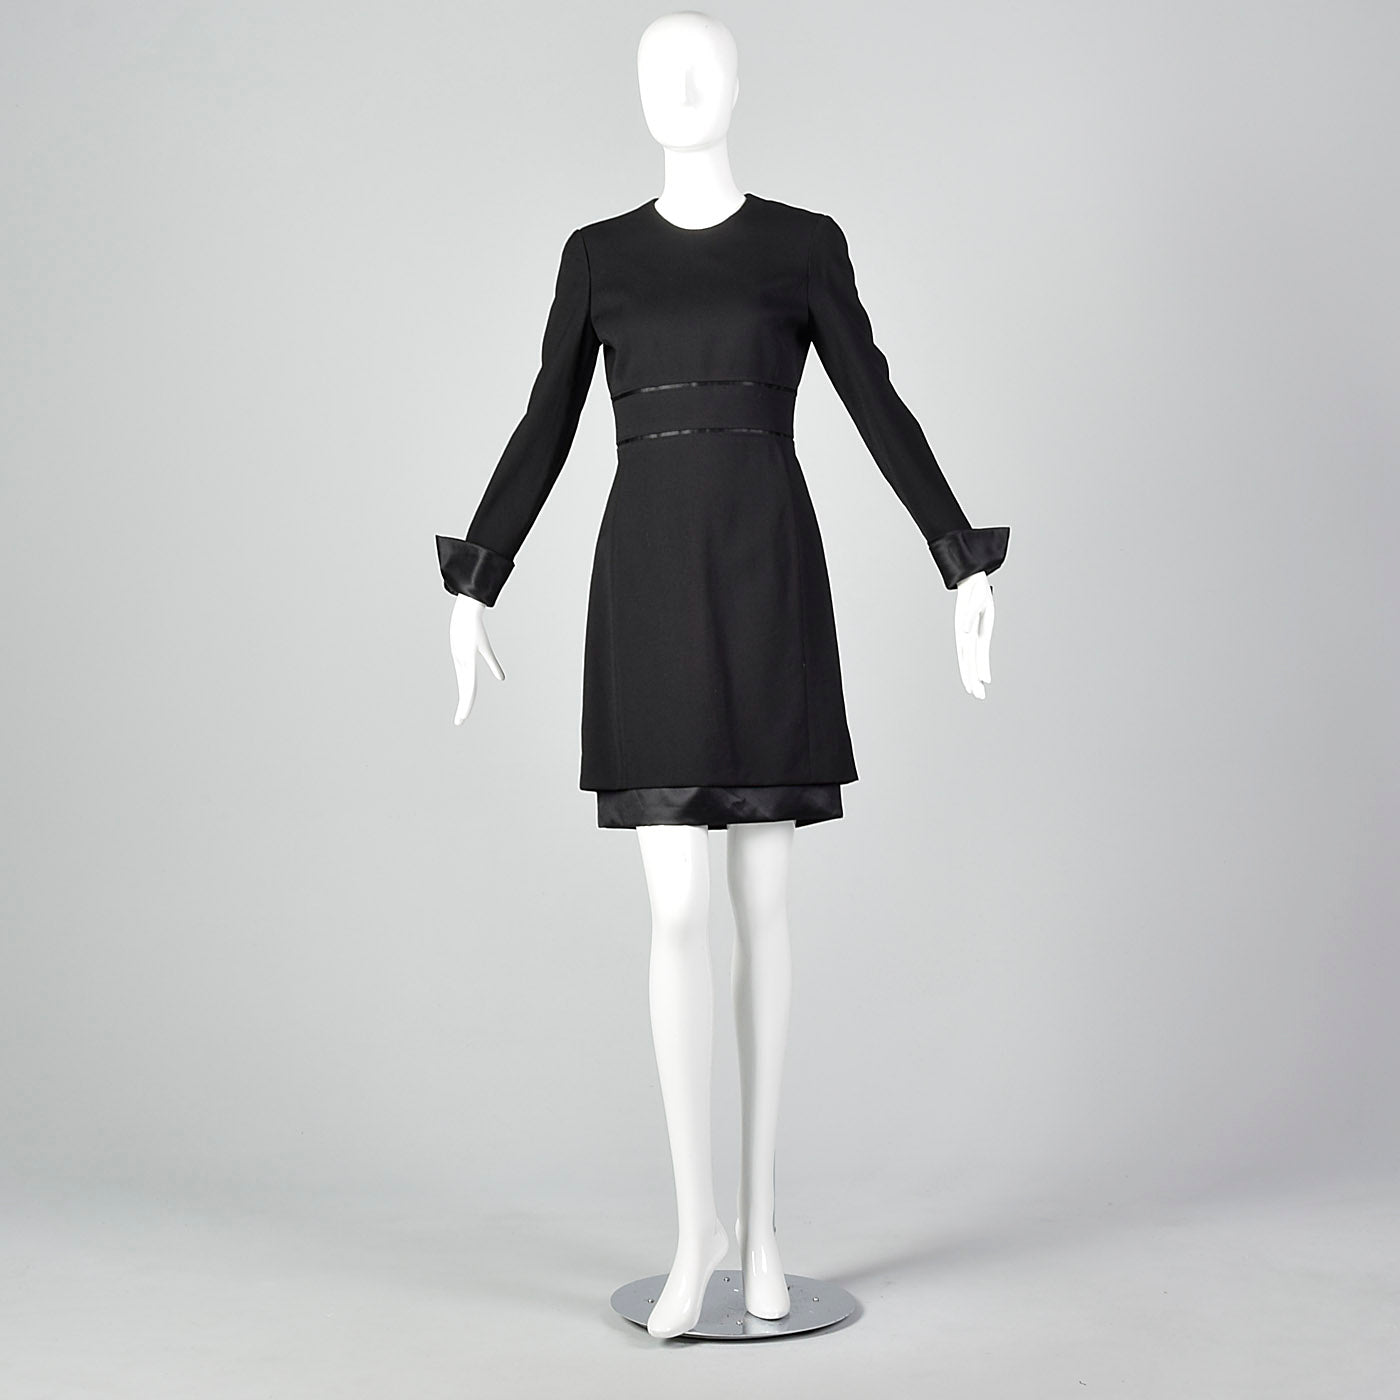 1990s Deadstock Louis Feraud Black Dress